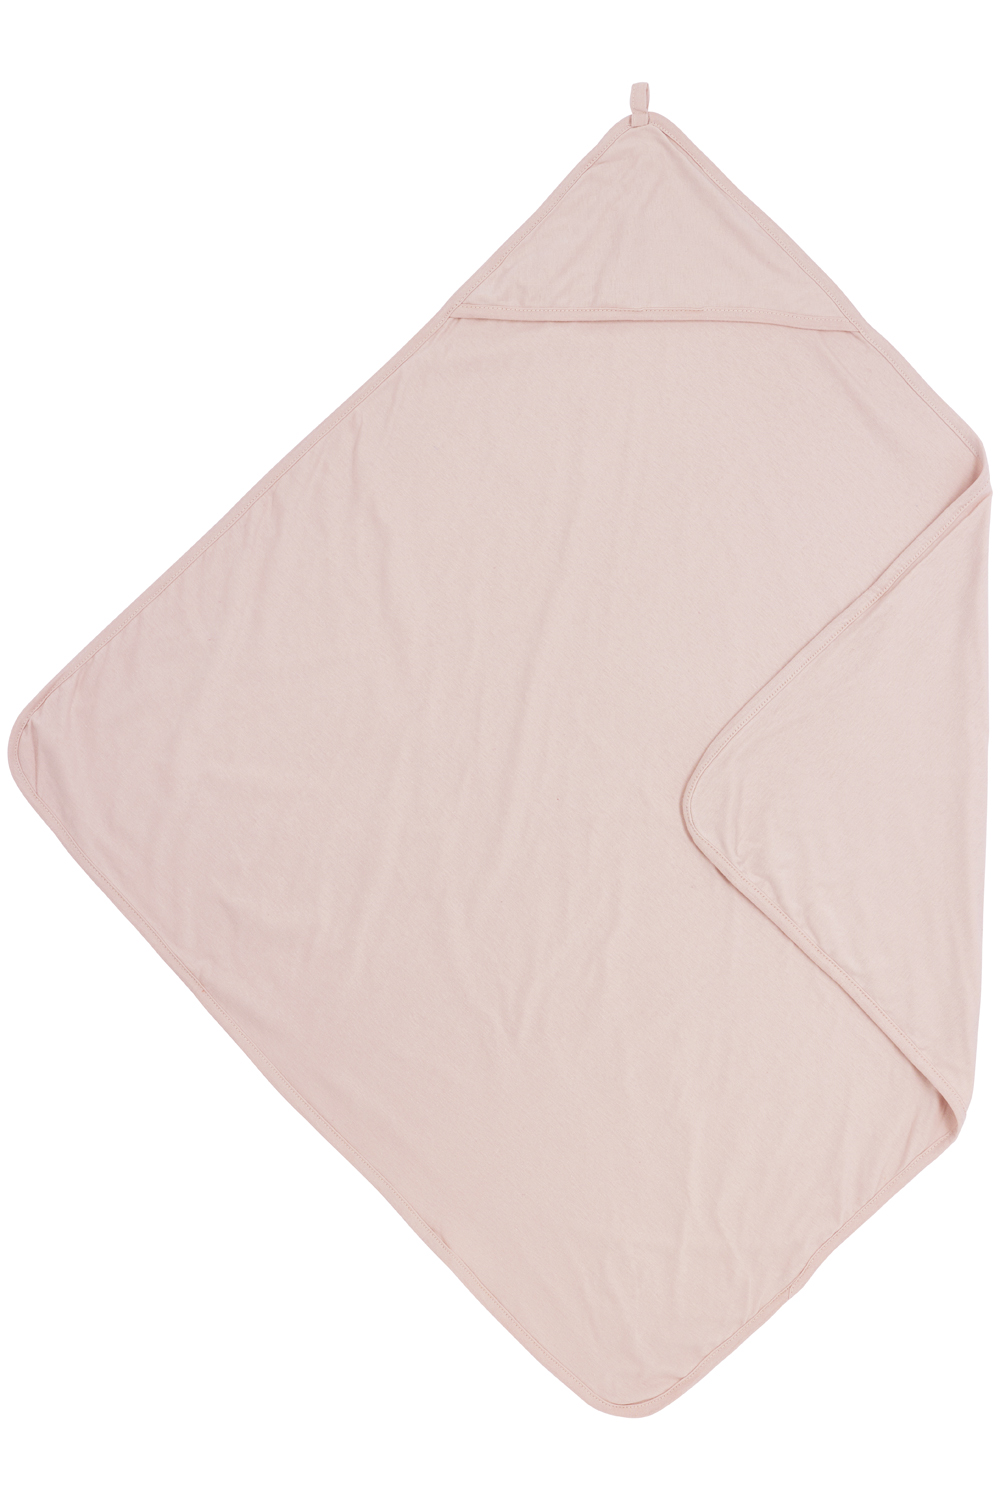 Bathcape Uni - soft pink - 80x80cm